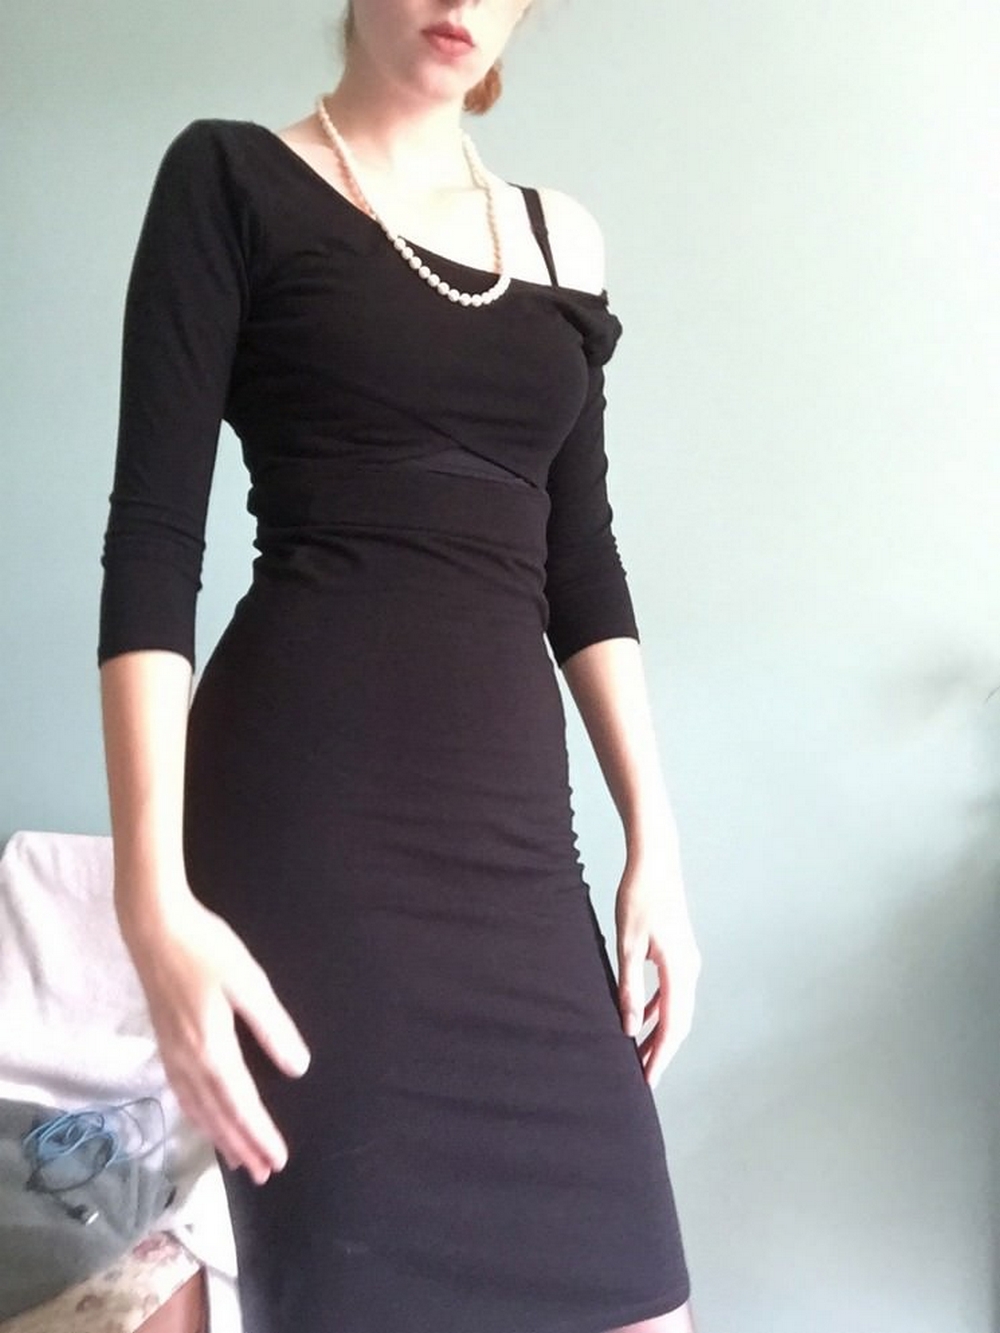 Длинноногая красотка в черном платье светит обнаженным телом 1 фото